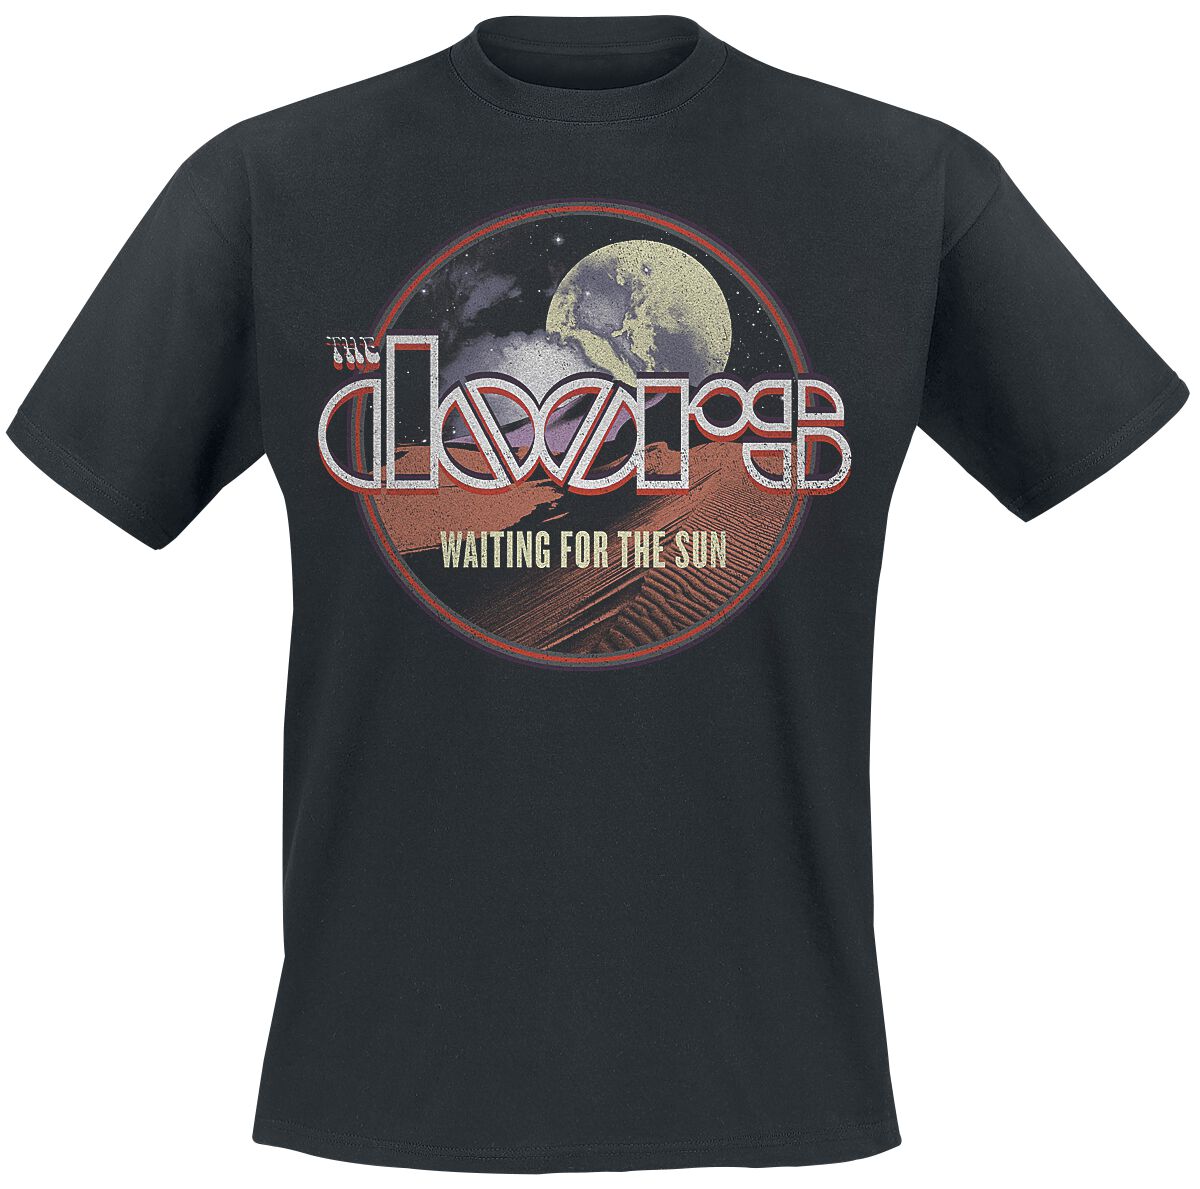 The Doors T-Shirt - Waiting For The Sun - S bis XXL - für Männer - Größe L - schwarz  - Lizenziertes Merchandise!